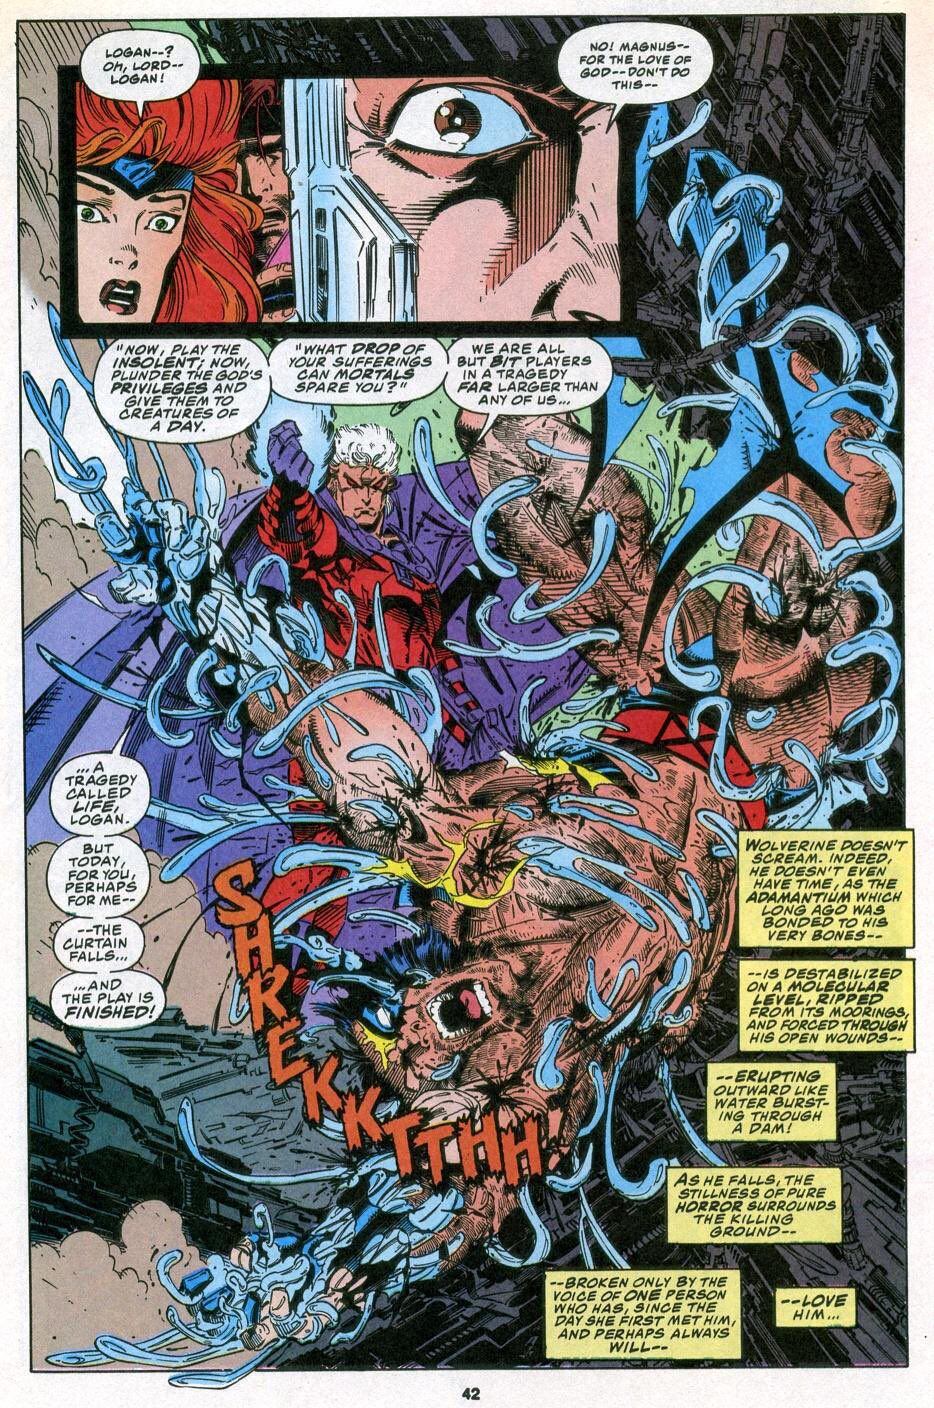 En los cómcis de X-Men, Magneto le arranca a Wolverine el Adamantium, creando a Onslaught